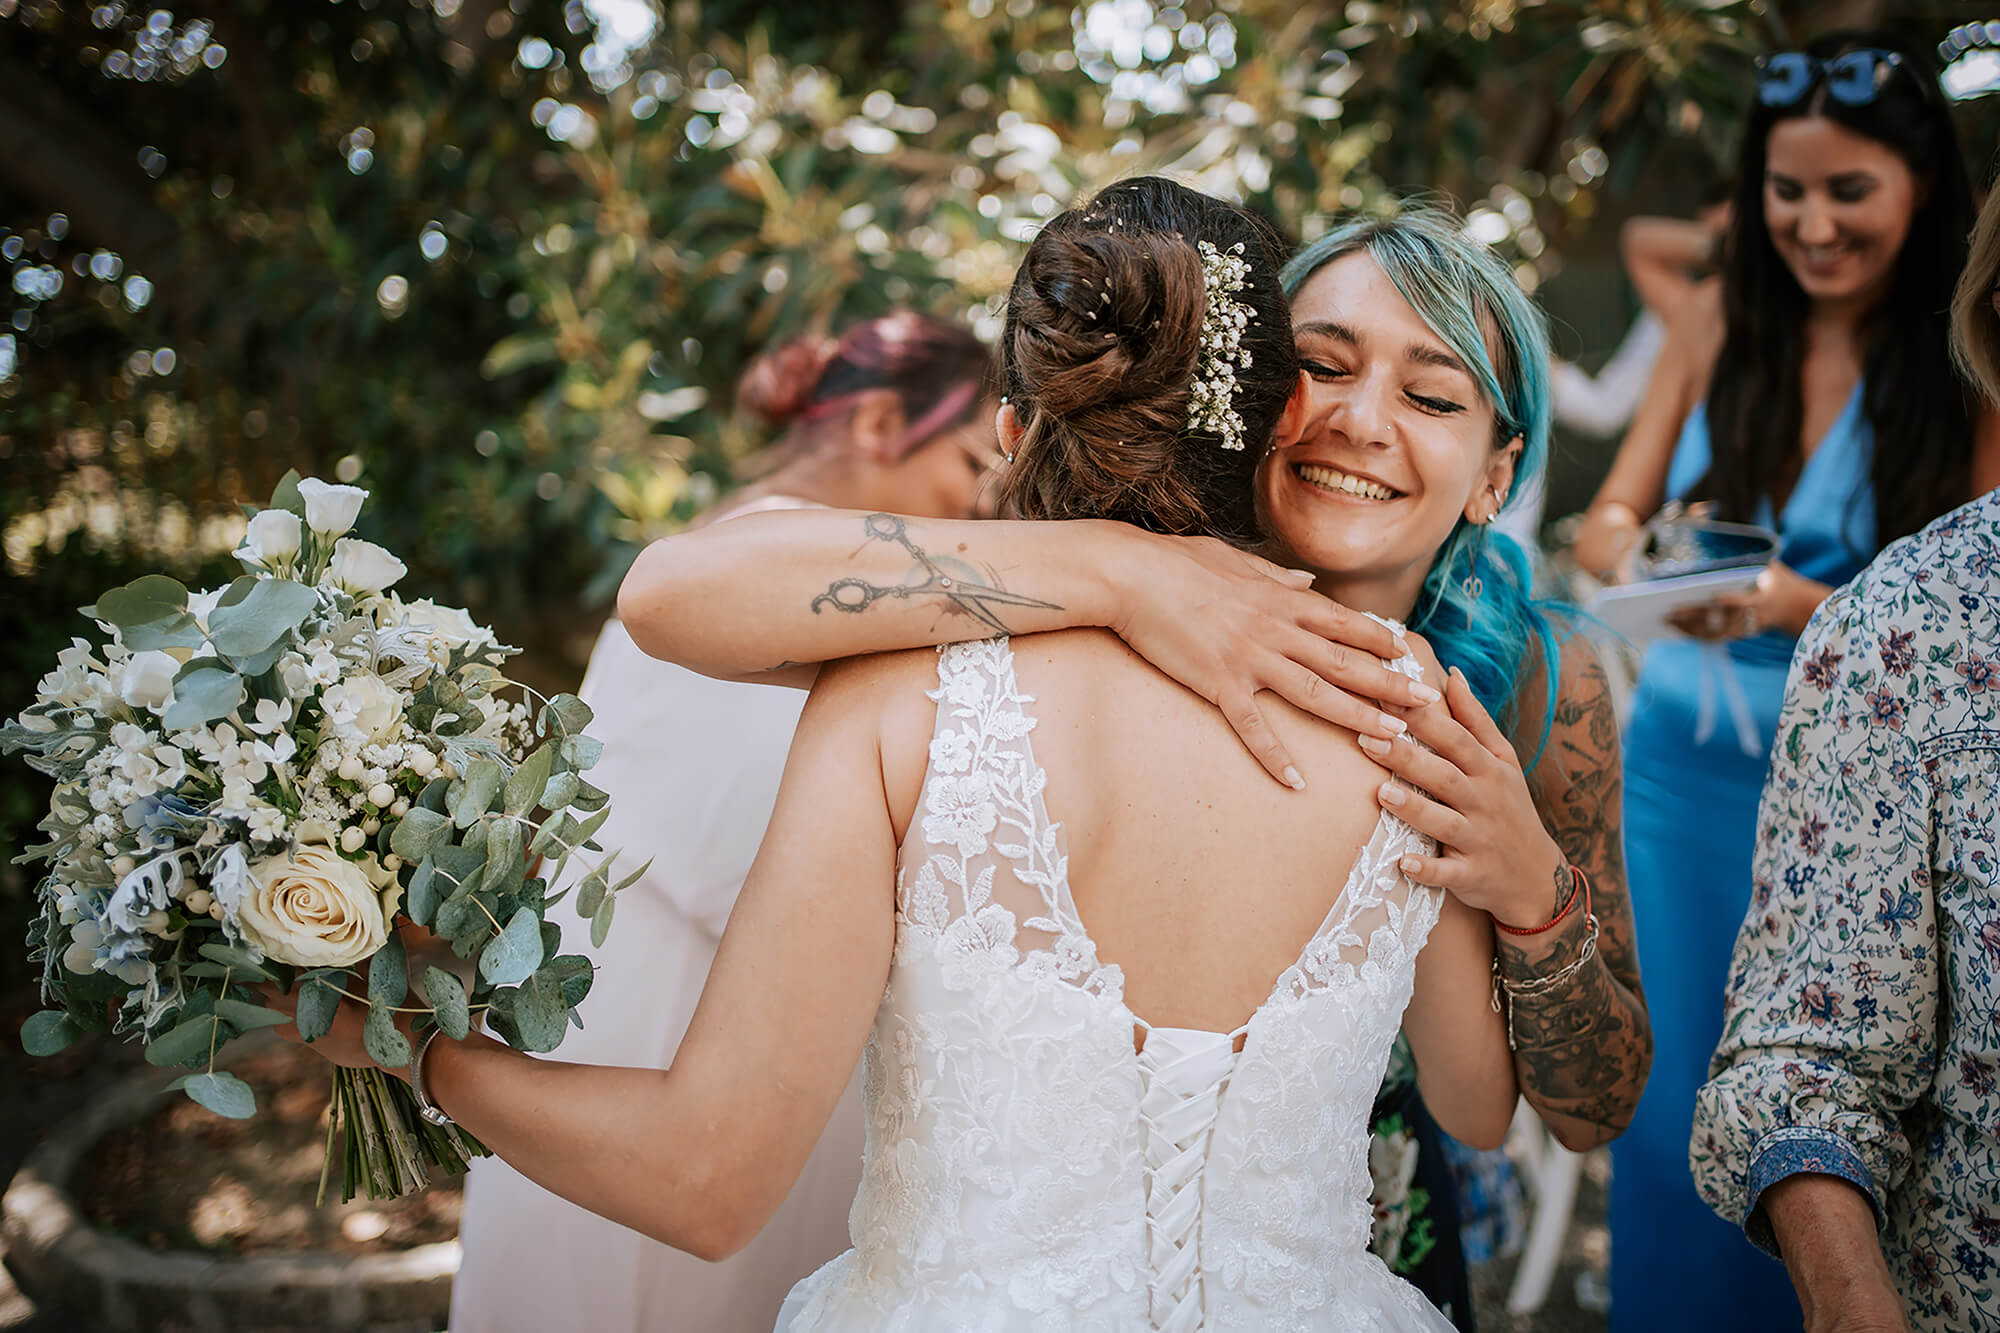 un abbraccio alla sposa dopo la cerimonia a villa ormond, location per matrimoni a sanremo